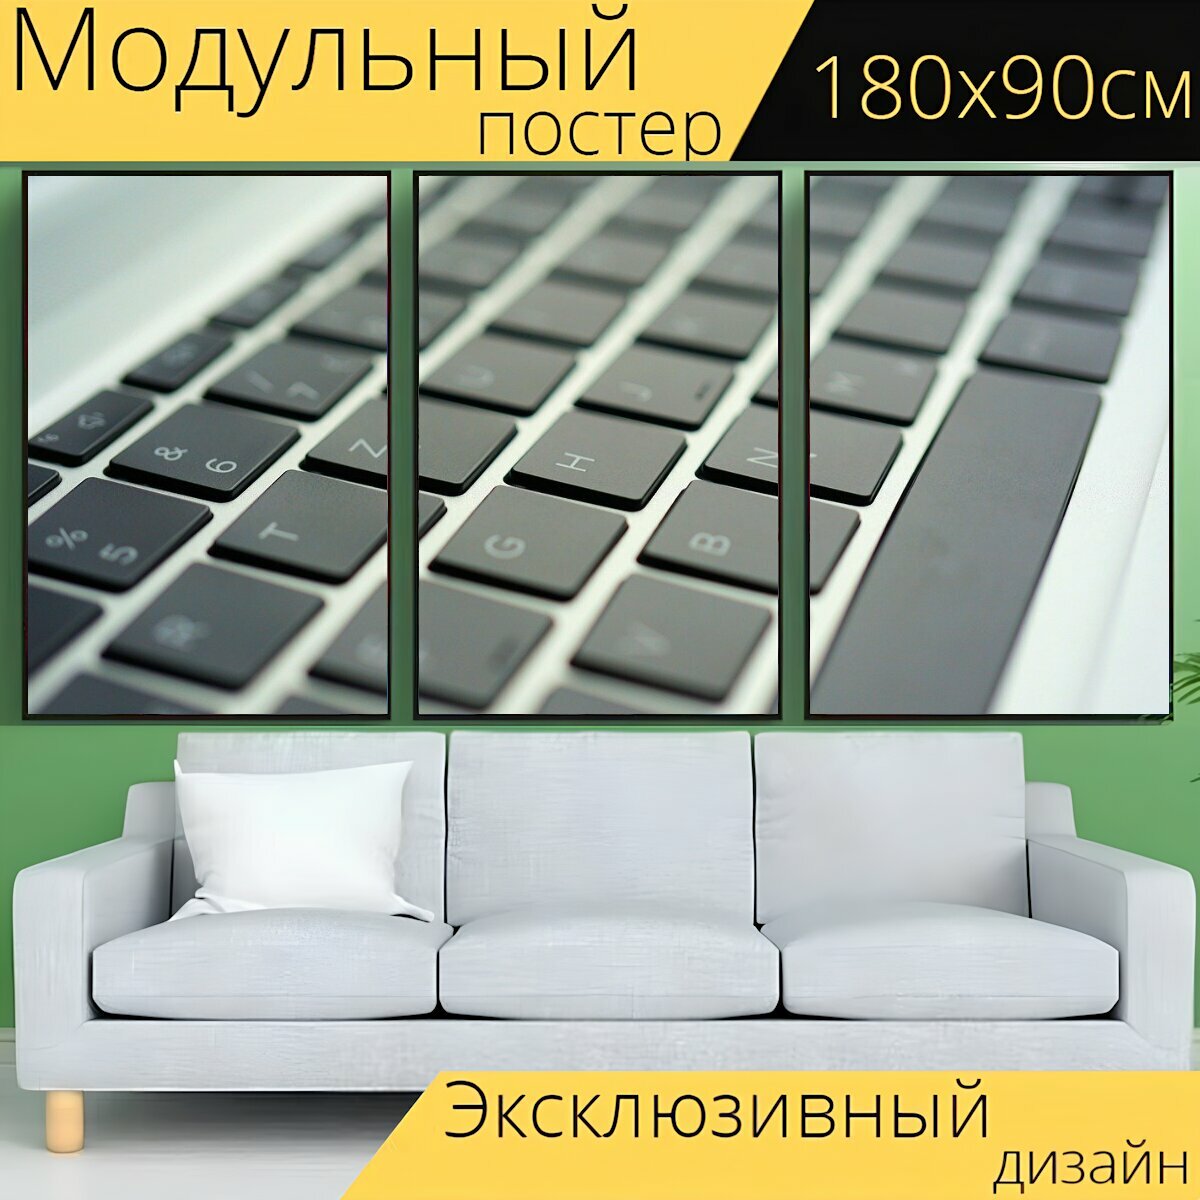 Модульный постер "Клавиатура, компьютер, ноутбук" 180 x 90 см. для интерьера